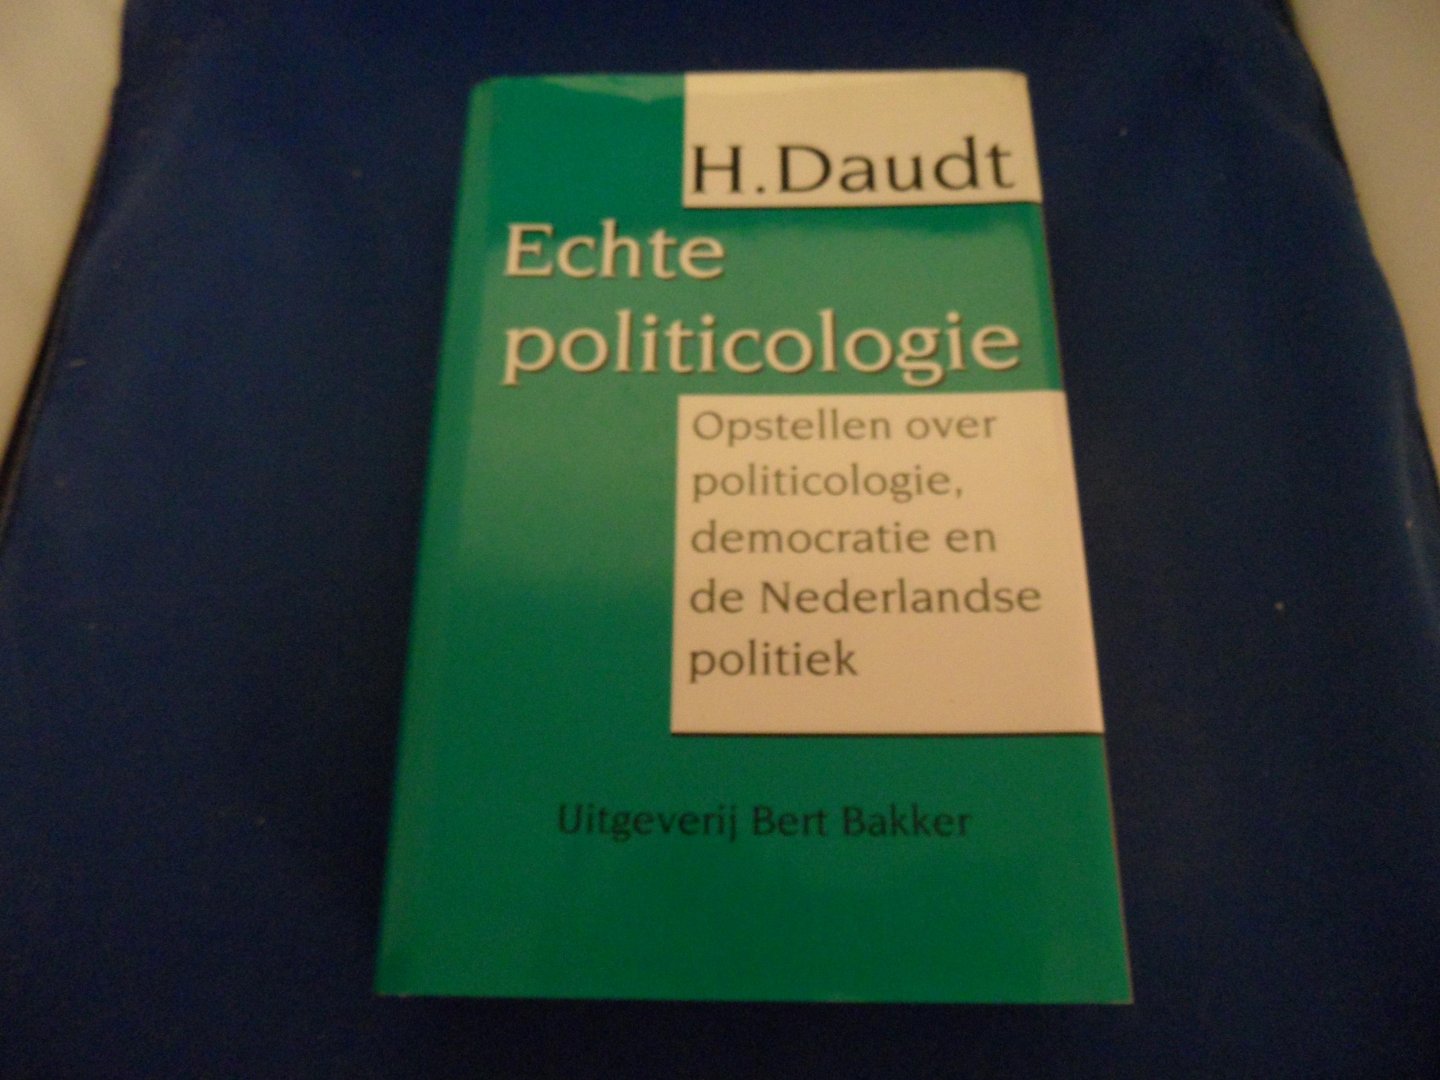 Daudt, H. - Echte politicologie: Opstellen over politicologie, democratic en de Nederlandse politiek